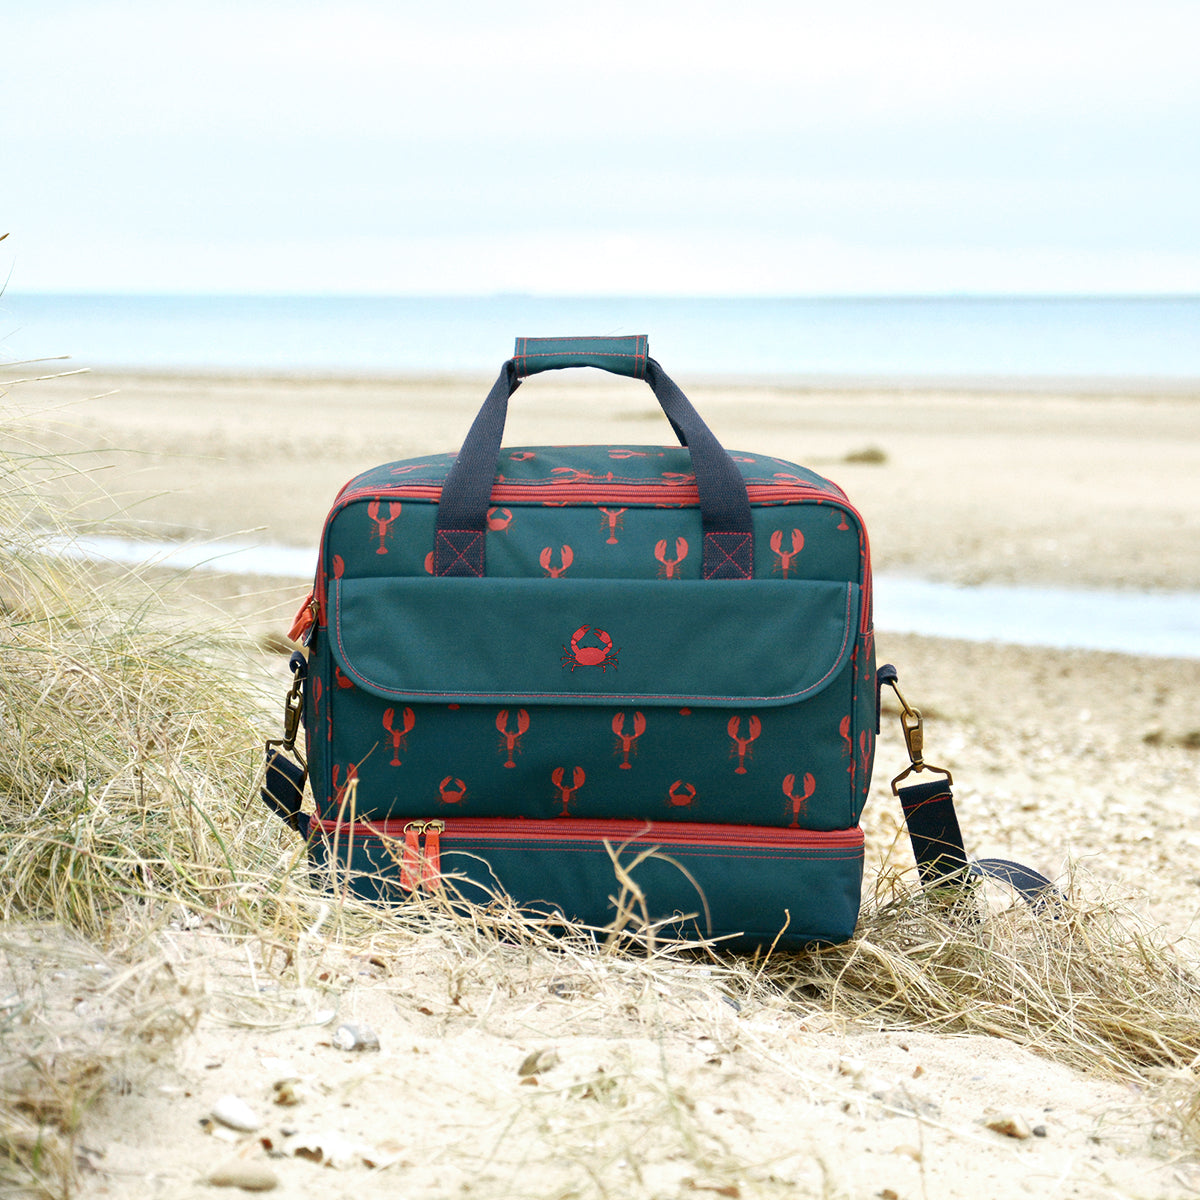 Lobster Summer Picnic Bag by Sophie Allport